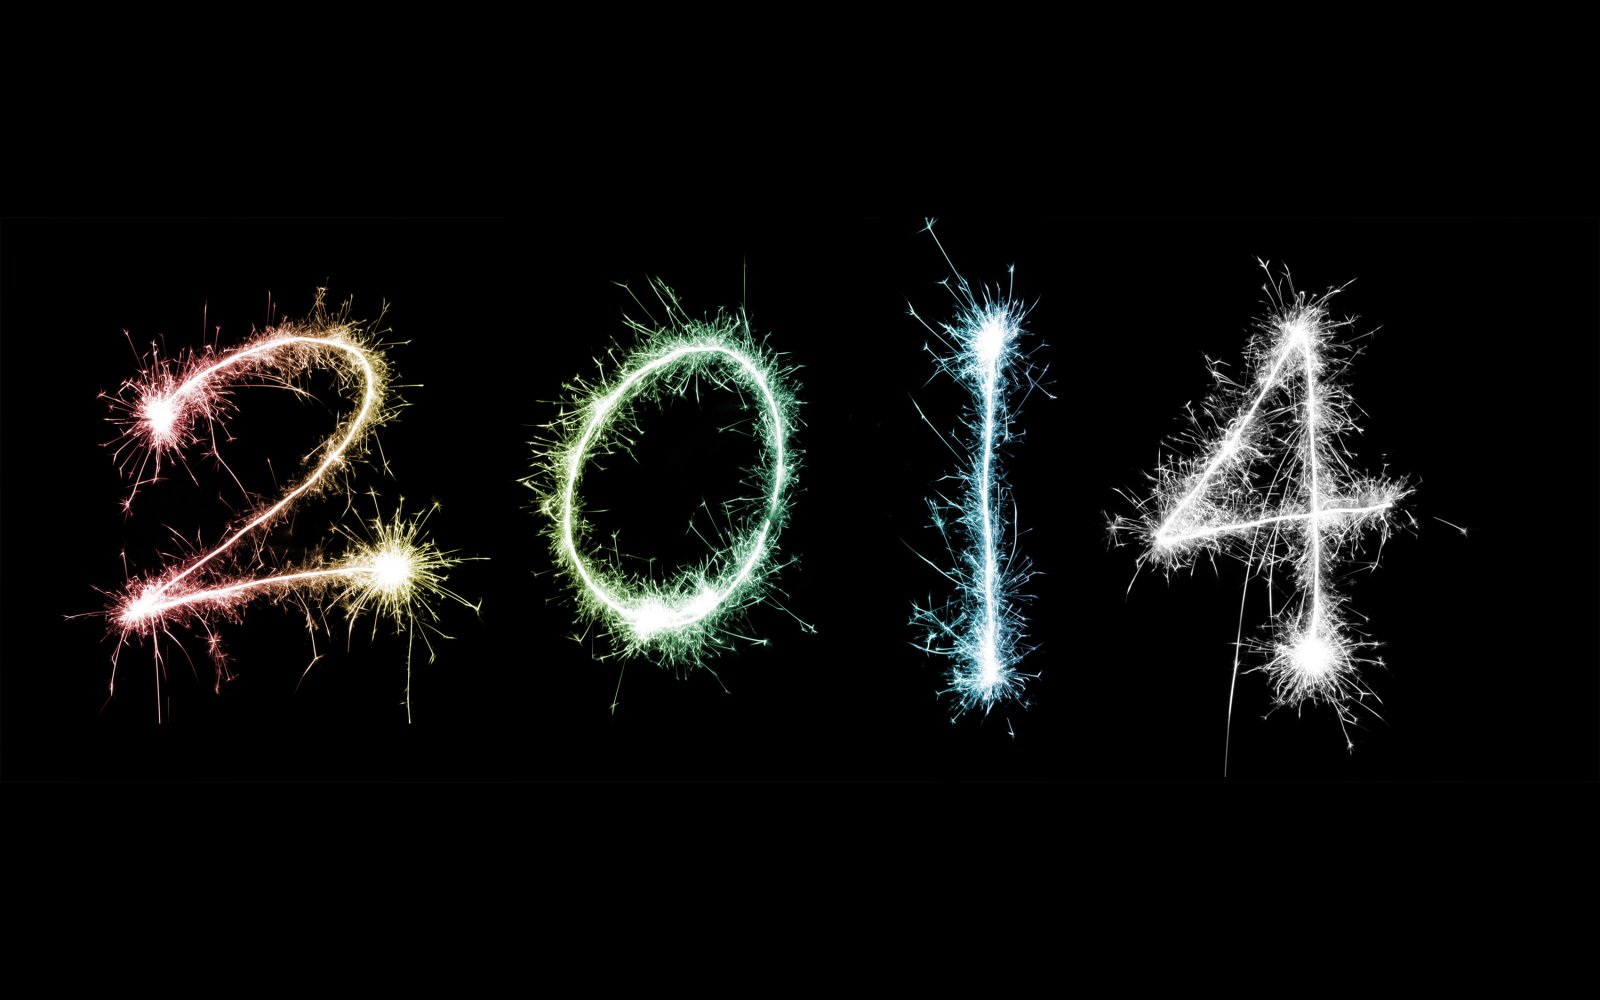 Bonne année 2014 !